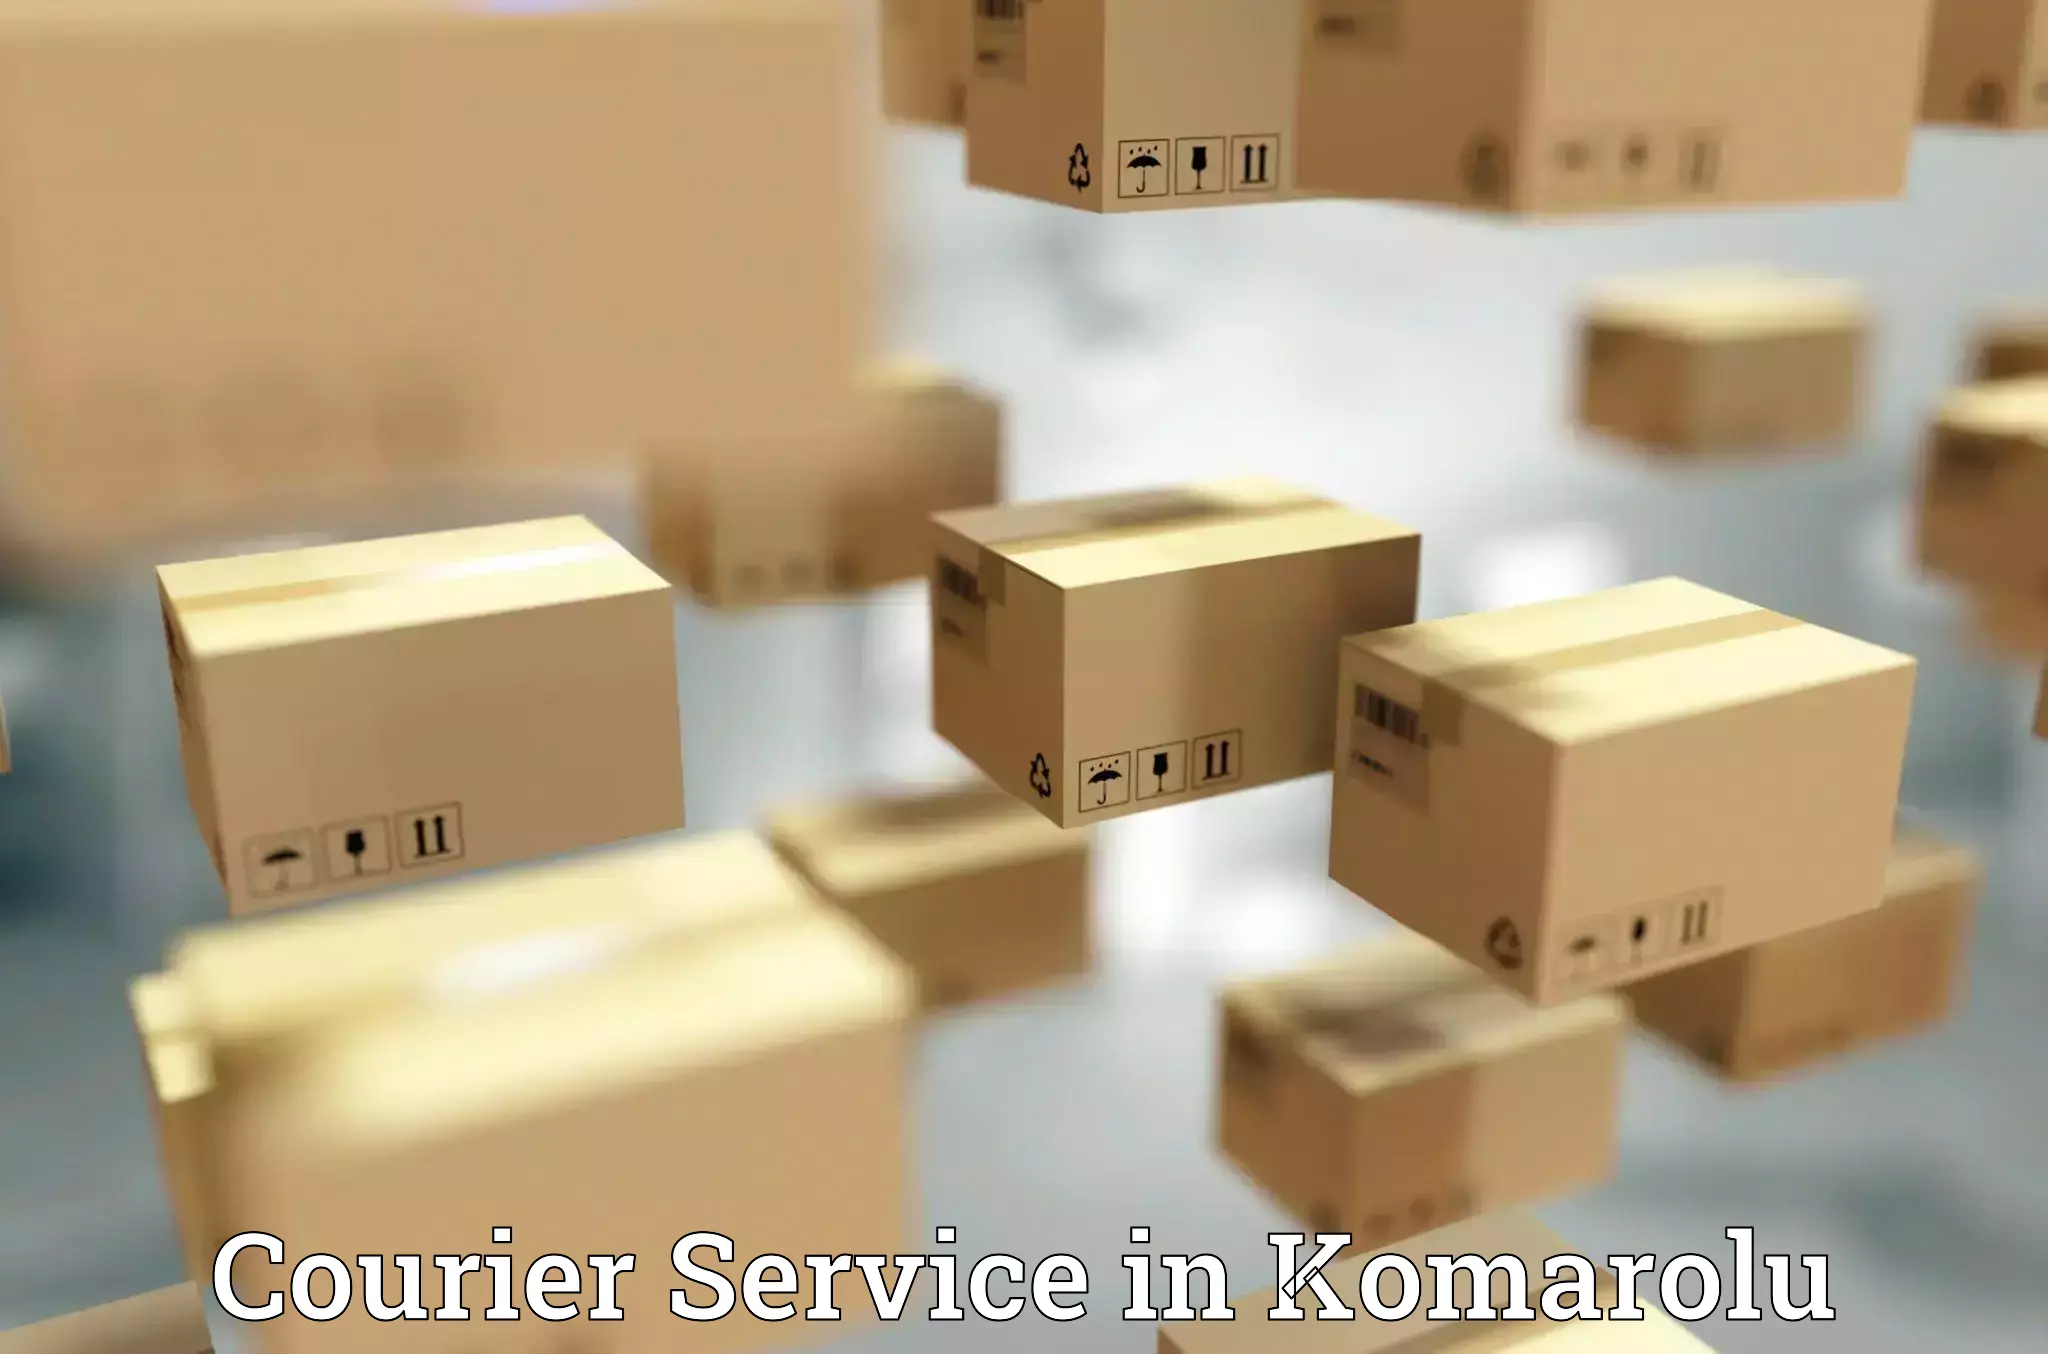 Modern delivery technologies in Komarolu